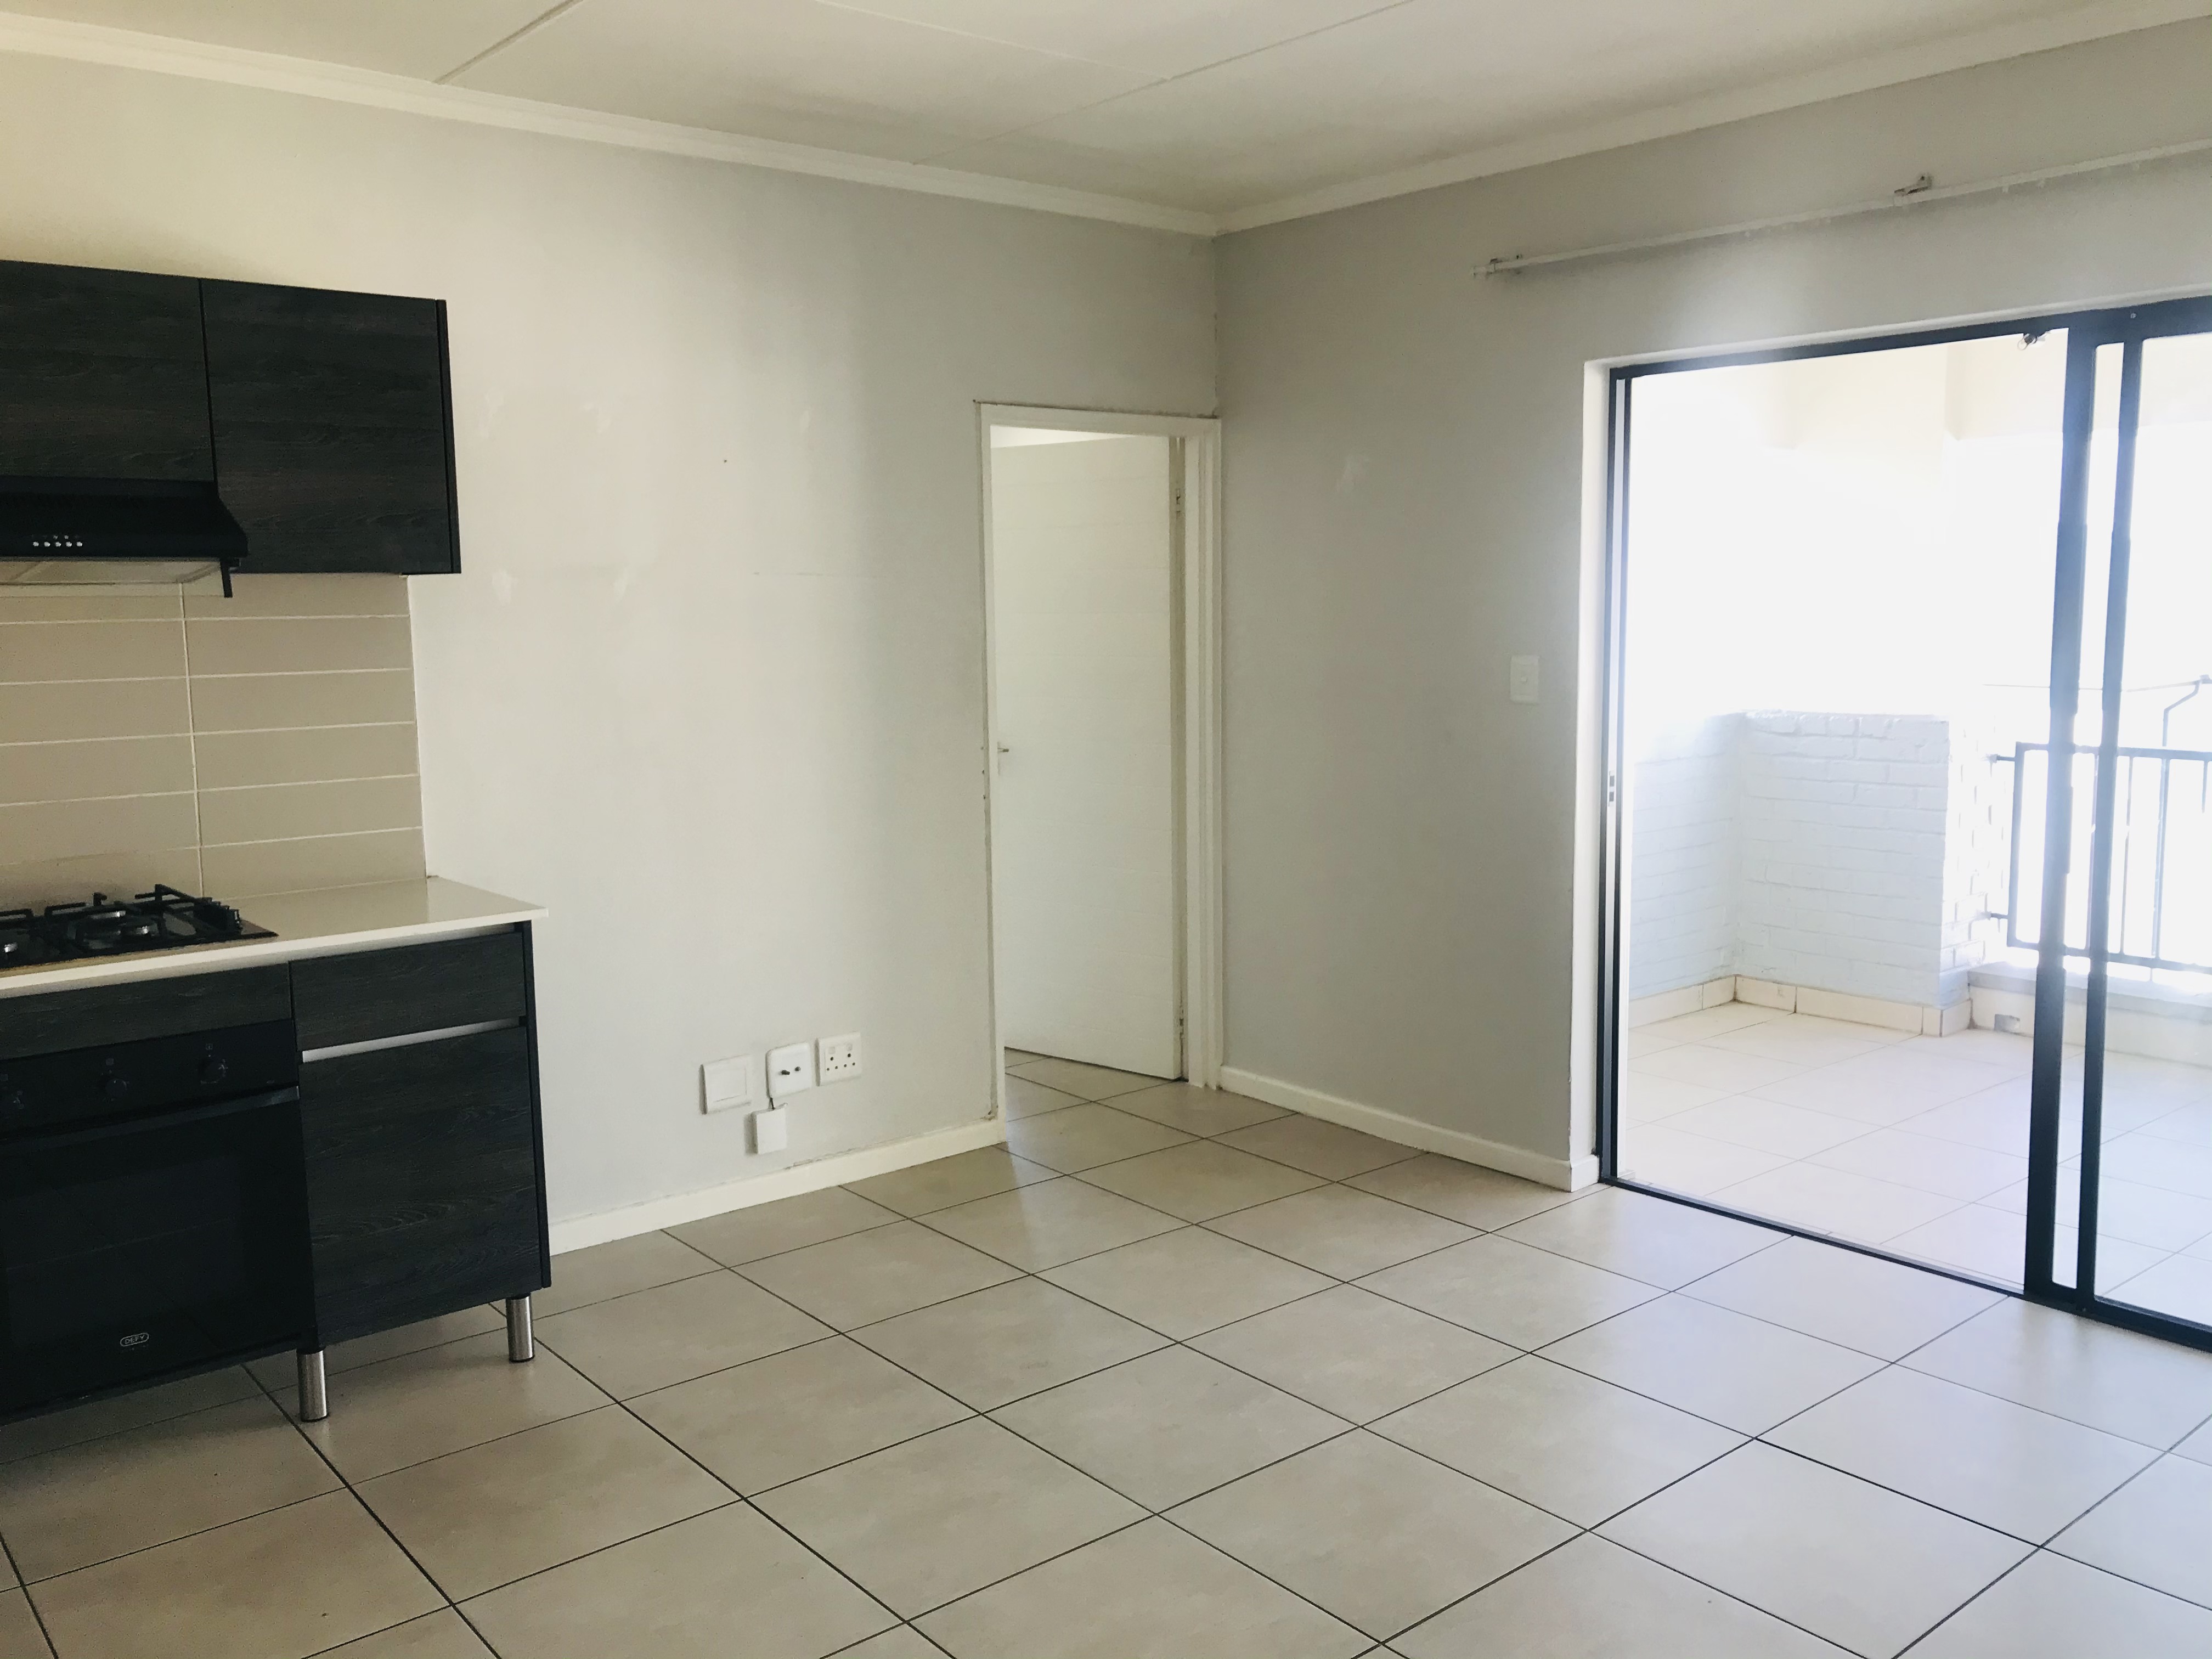 1 Bedroom Property for Sale in Petervale Gauteng